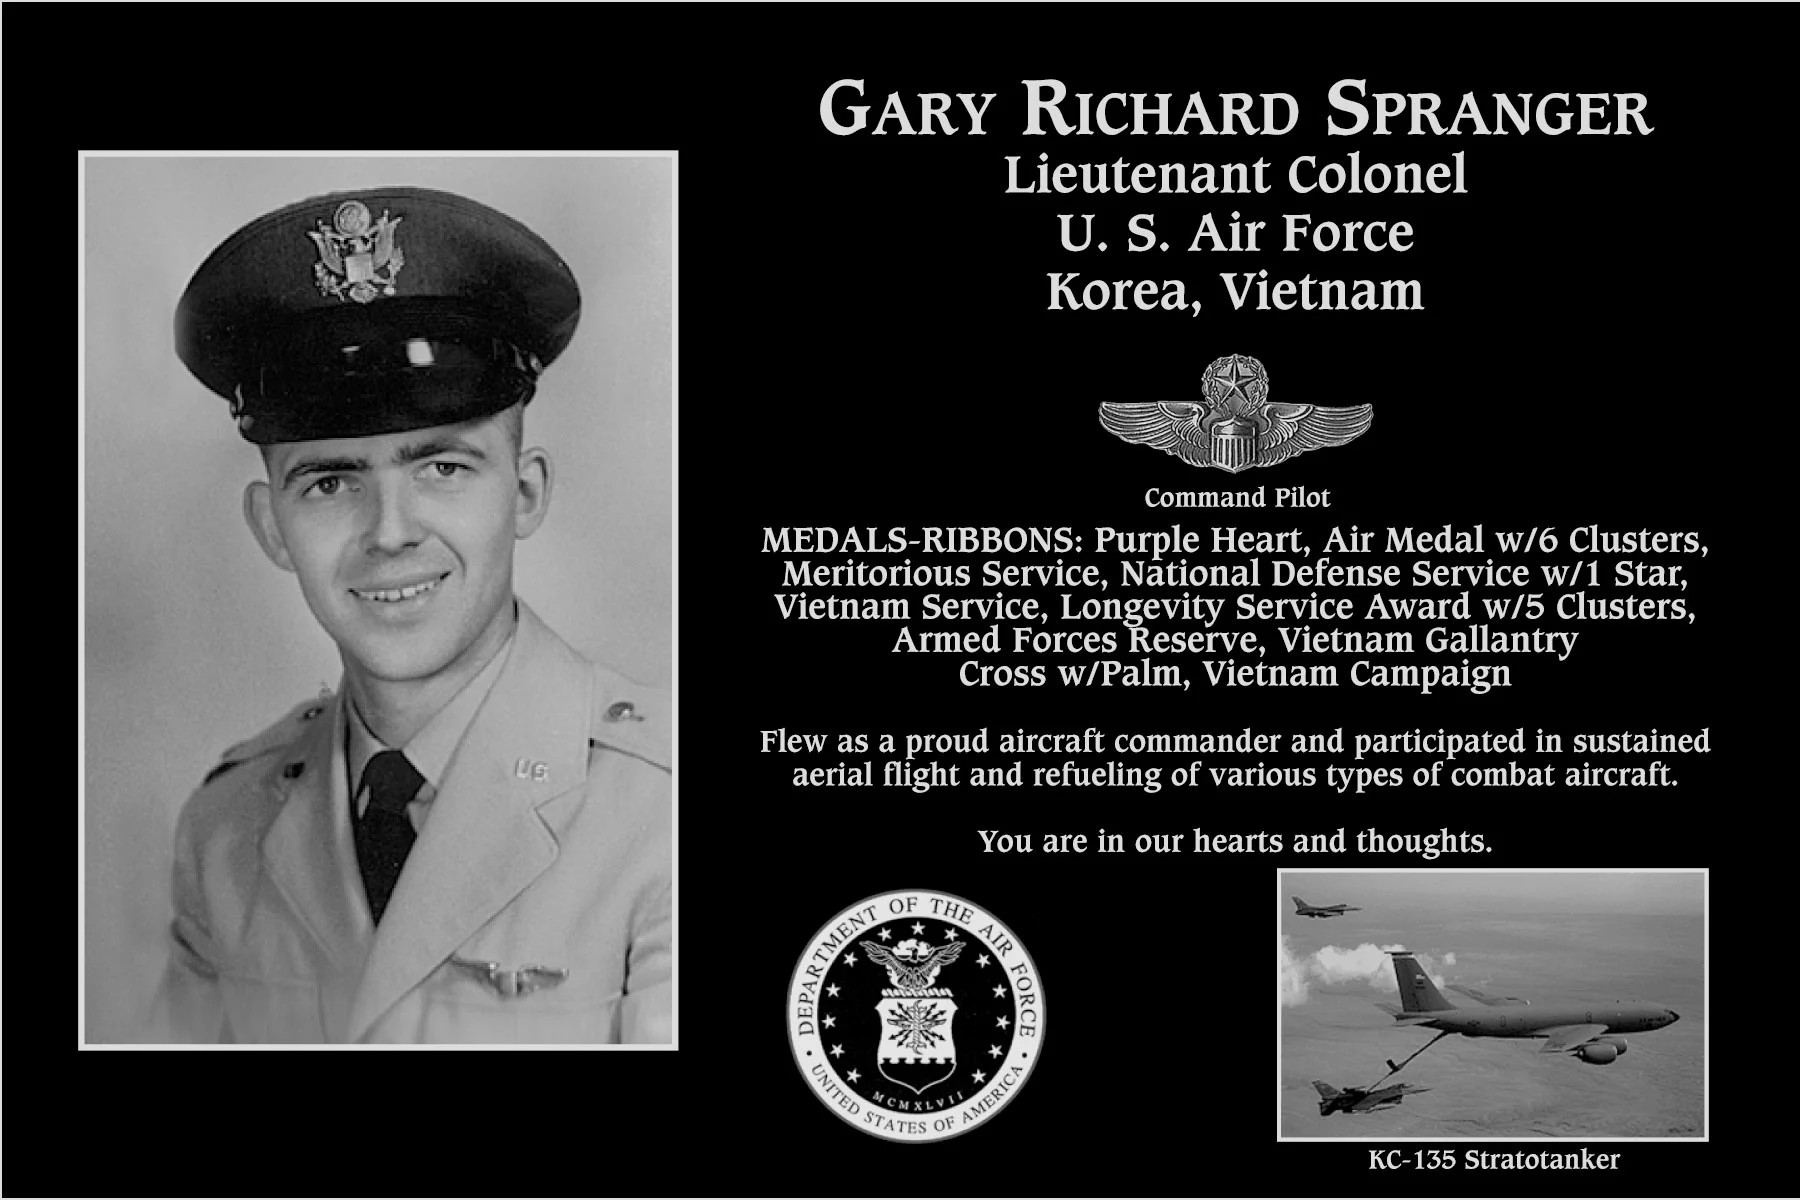 Gary Richard Spranger